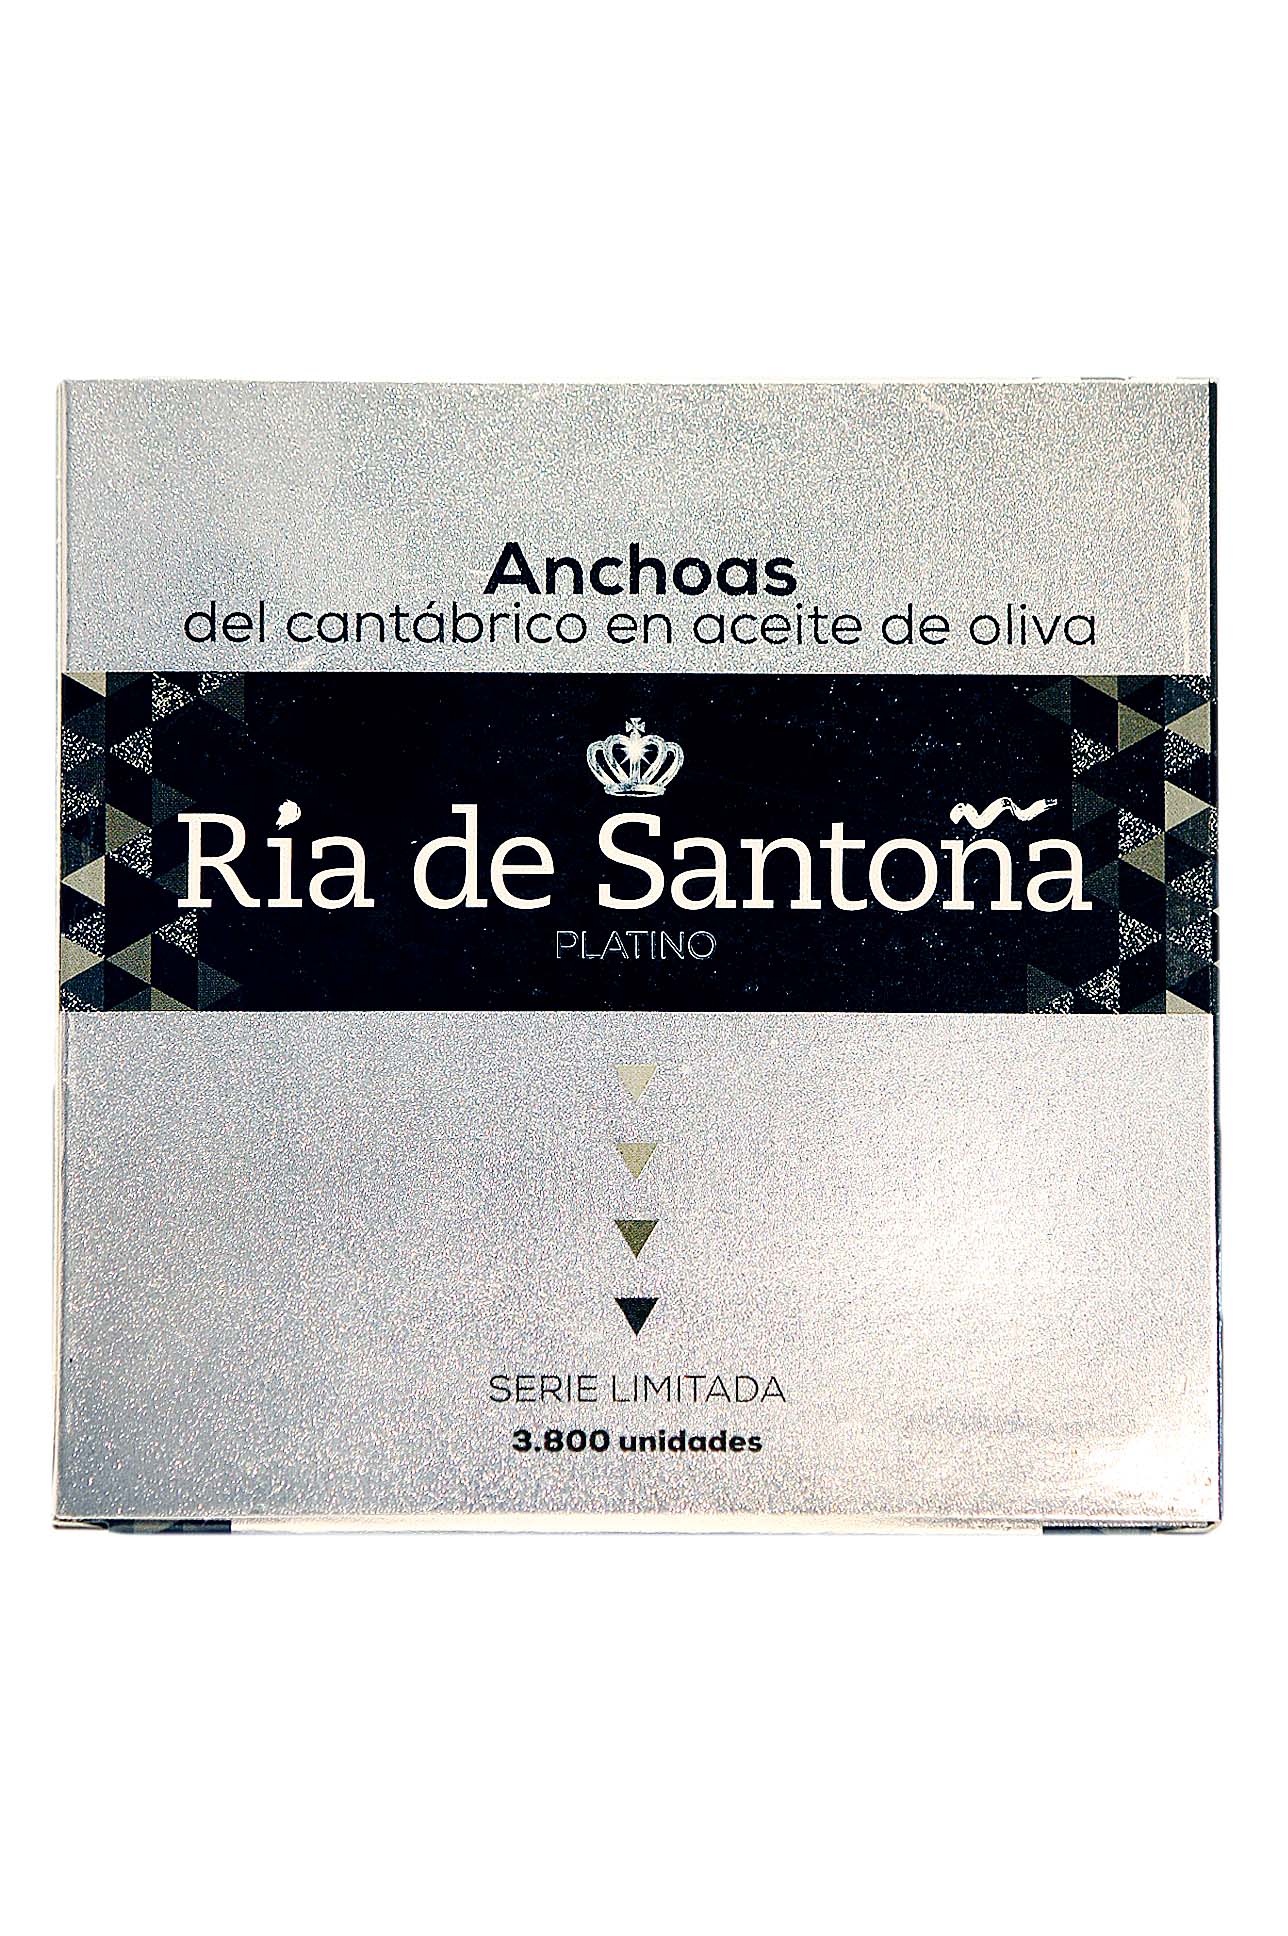 Anchoas En Aceite De Oliva Serie Platinum Ria de Santoña